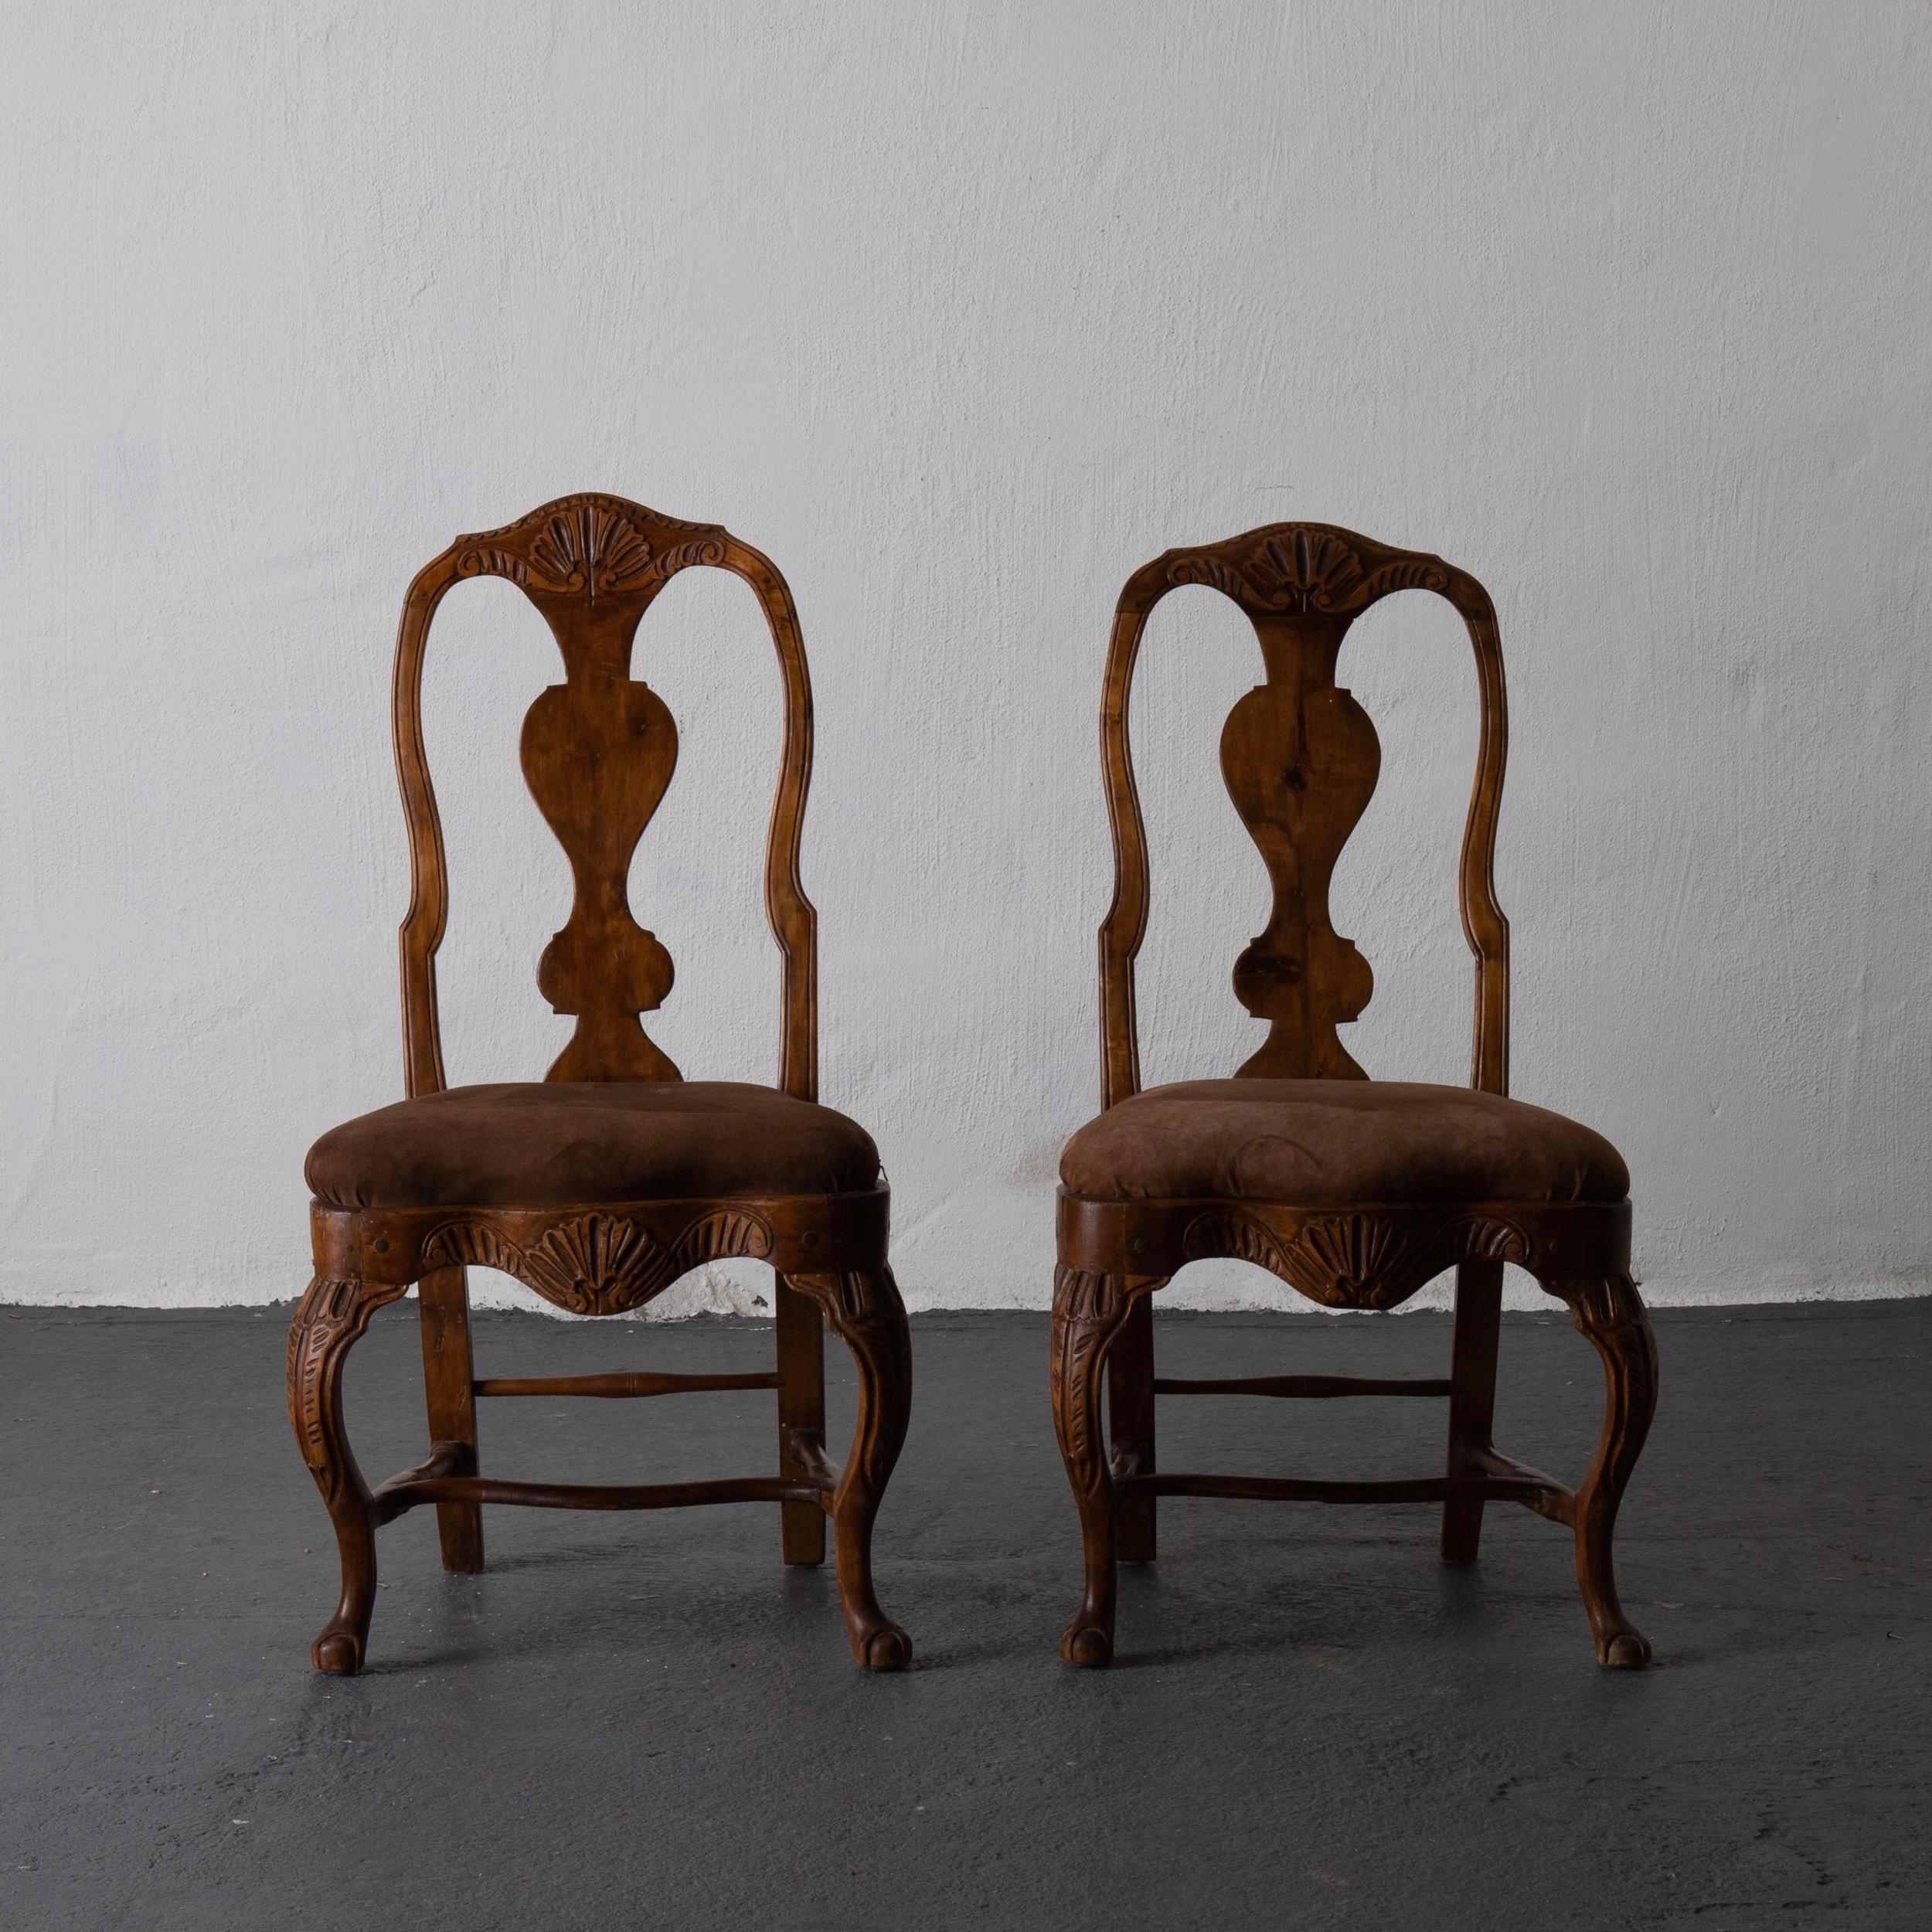 Une paire de belles chaises latérales Rococo suédoises provenant de la partie ouest de la Suède. Fabriqué pendant la période rococo et tapissé d'un daim brun chocolat. 

  